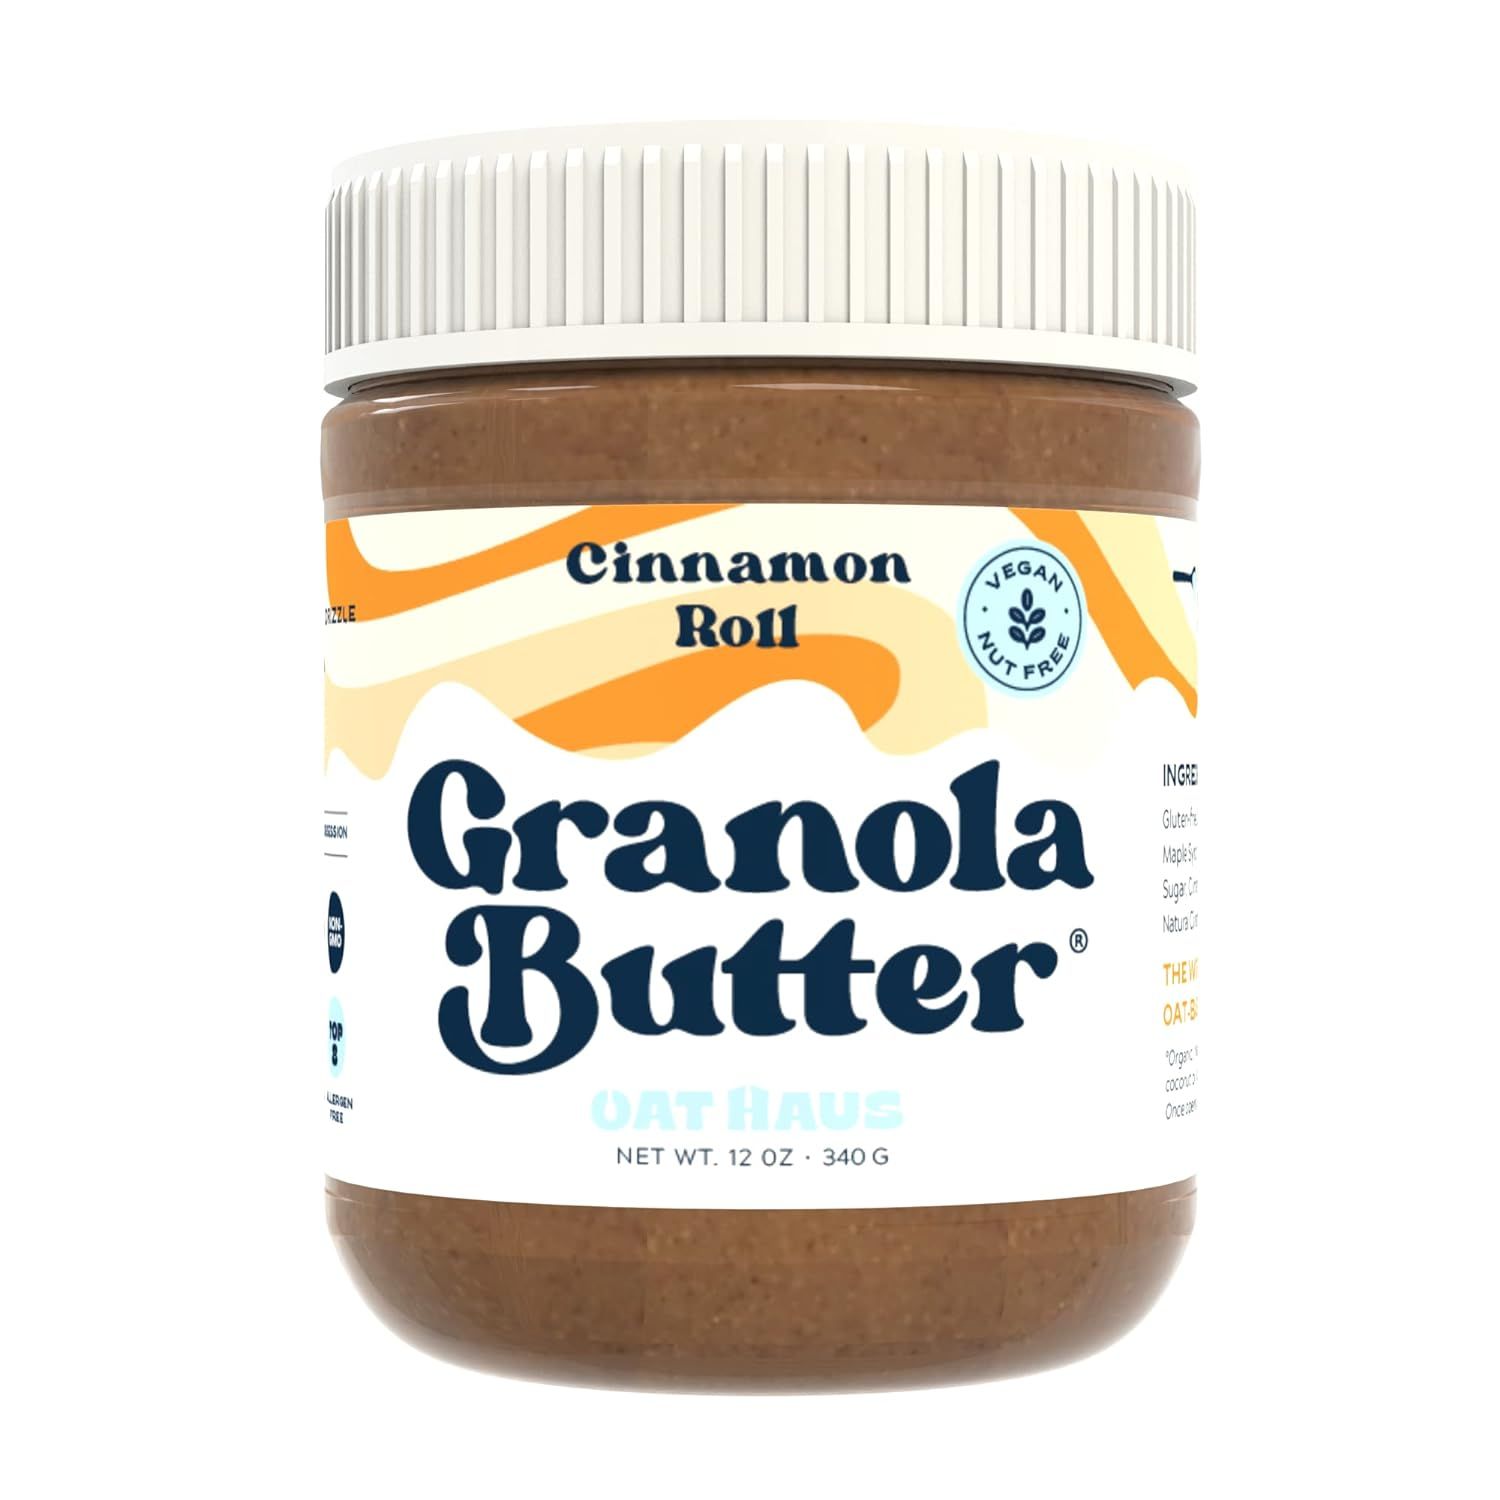 KWEEN Oat Haus Cinnamon Roll Granola Butter | Peanut-free, Almond (Tree-Nut) Free, & School-Safe ... | Amazon (US)